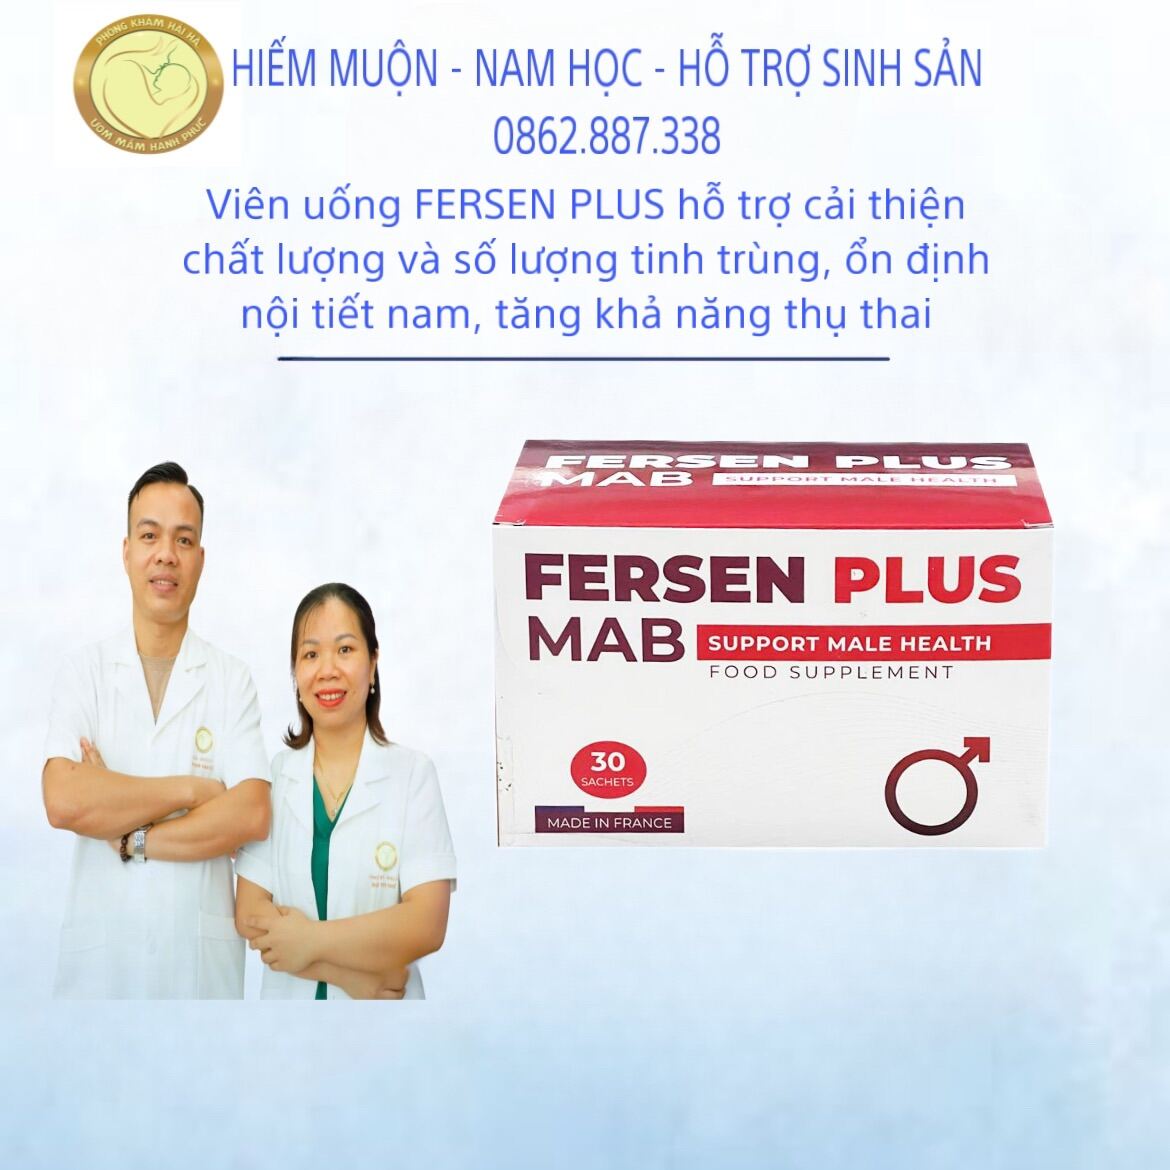 Viên uống fersen plus hỗ trợ cải thiện chất lượng và số lượng tinh trùng - ảnh sản phẩm 1